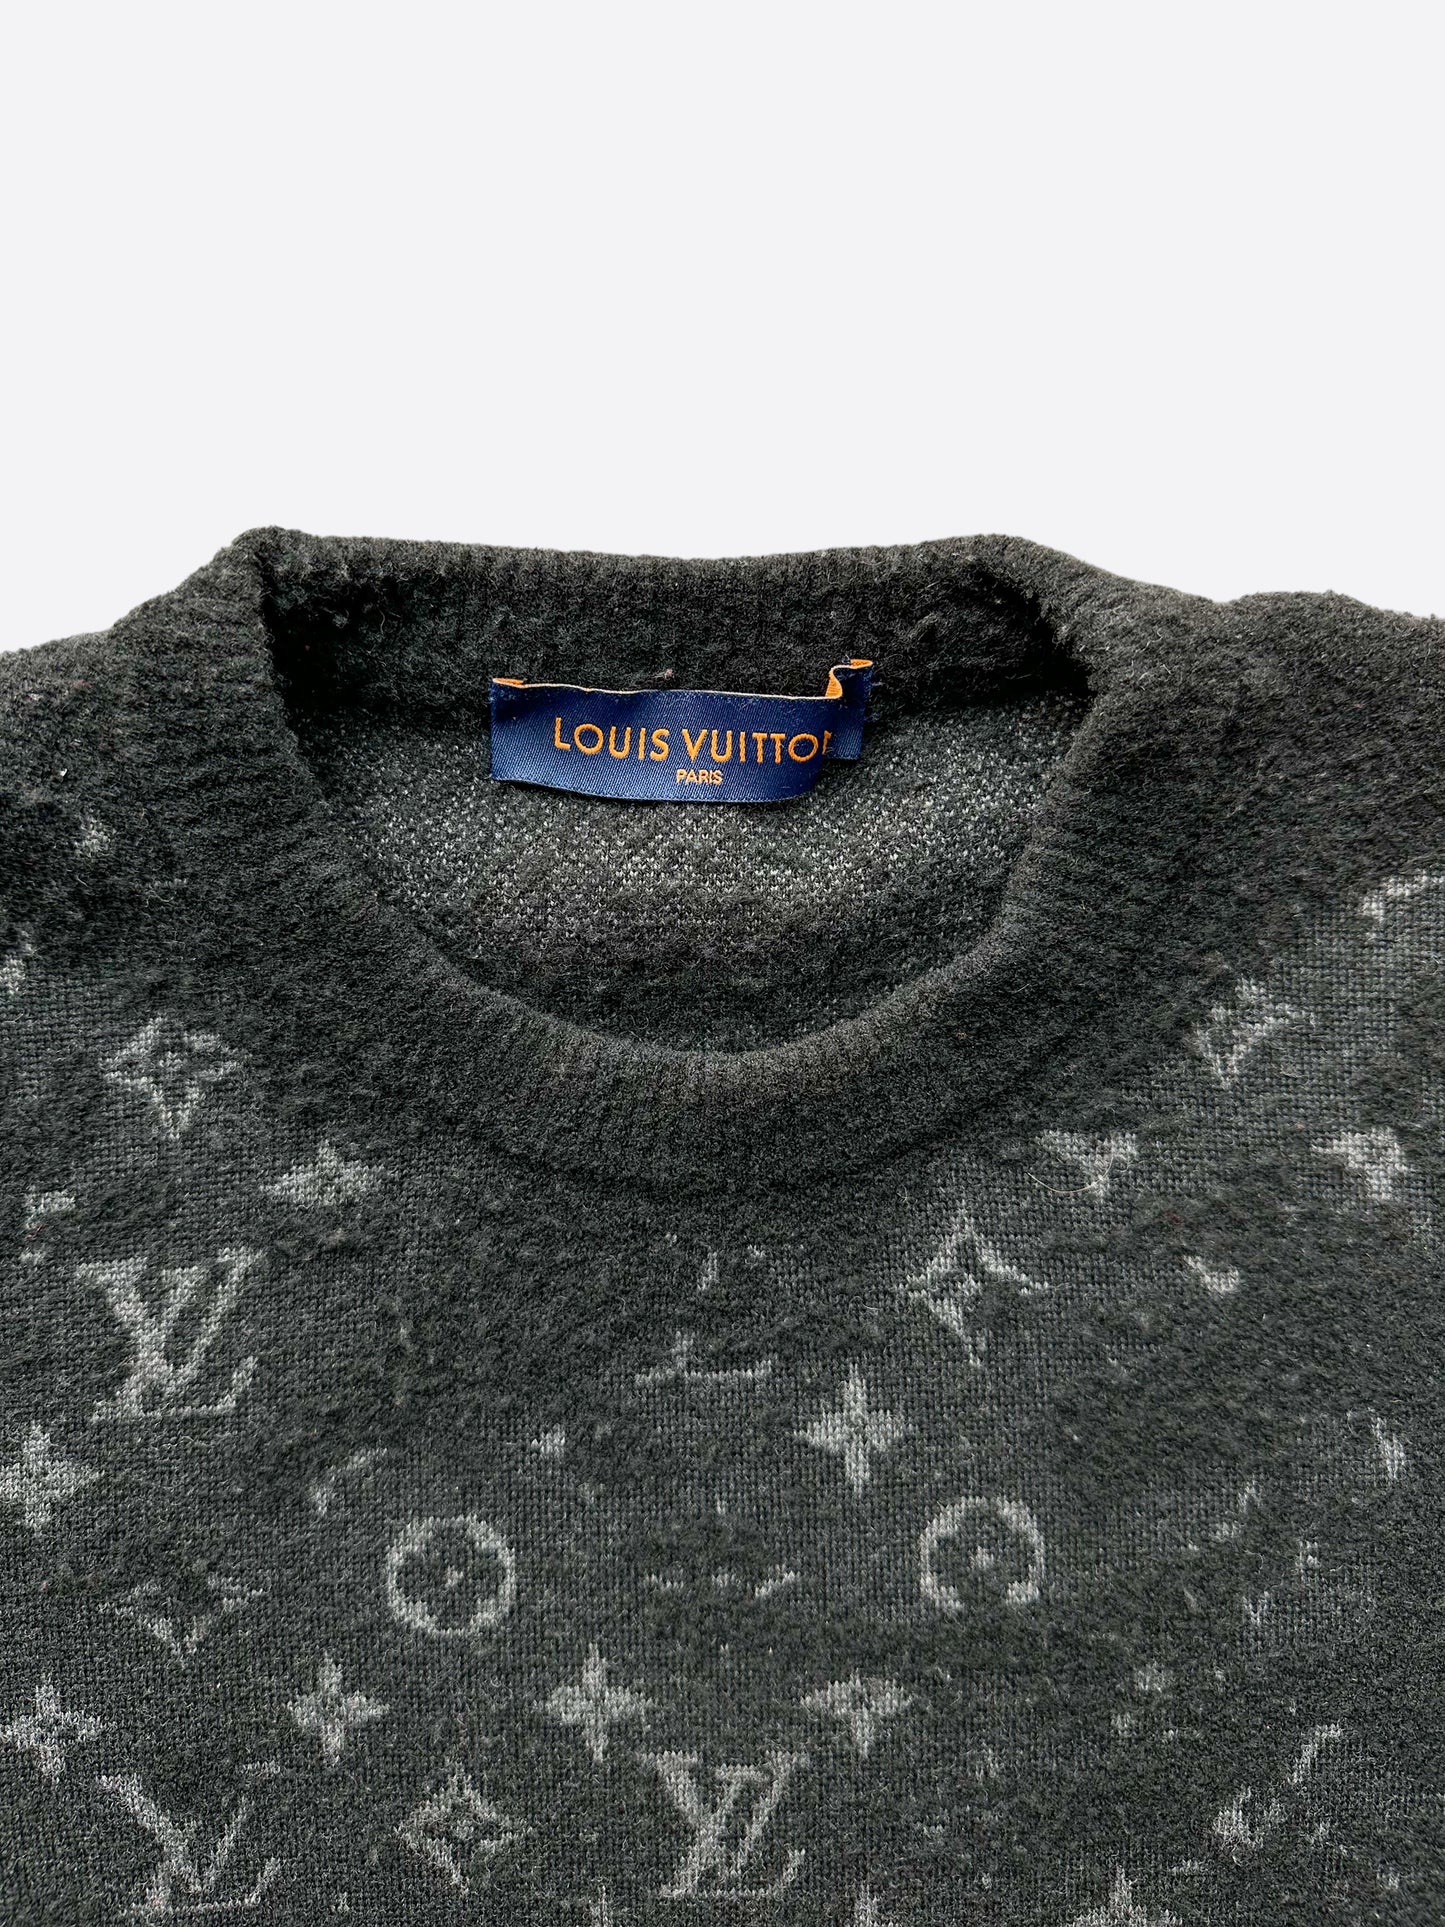 Louis Vuitton Black Knit Drop Monogram Crewneck